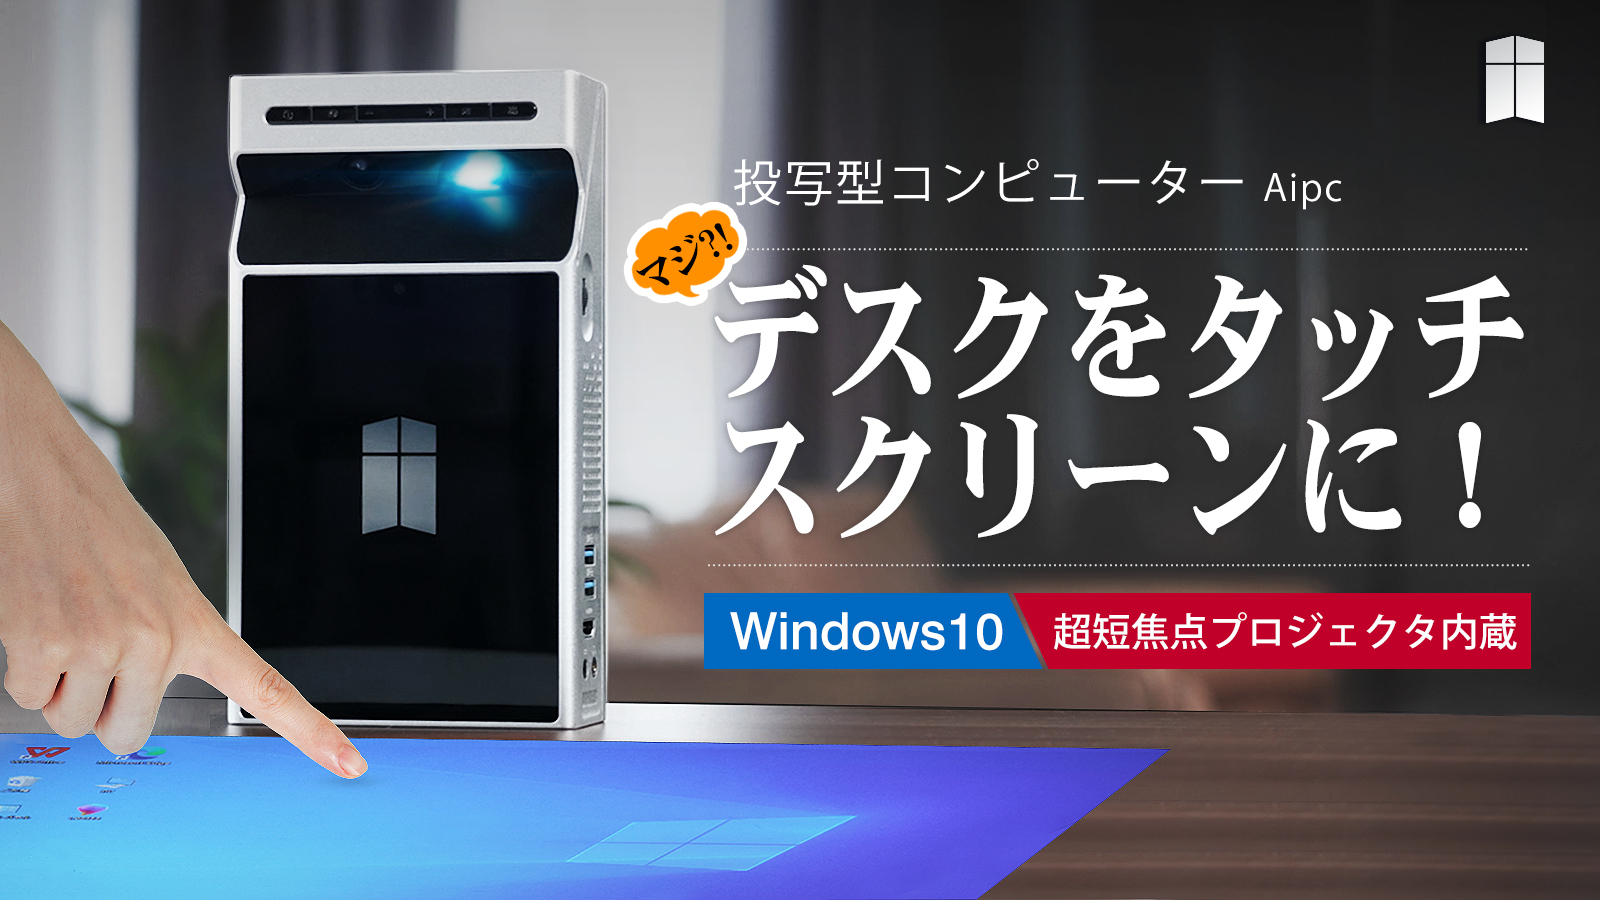 投写映像に触れて操作する近未来型パソコン「Aipc」が日本上陸─Windows10のアシスタントAI コルタナにも対応